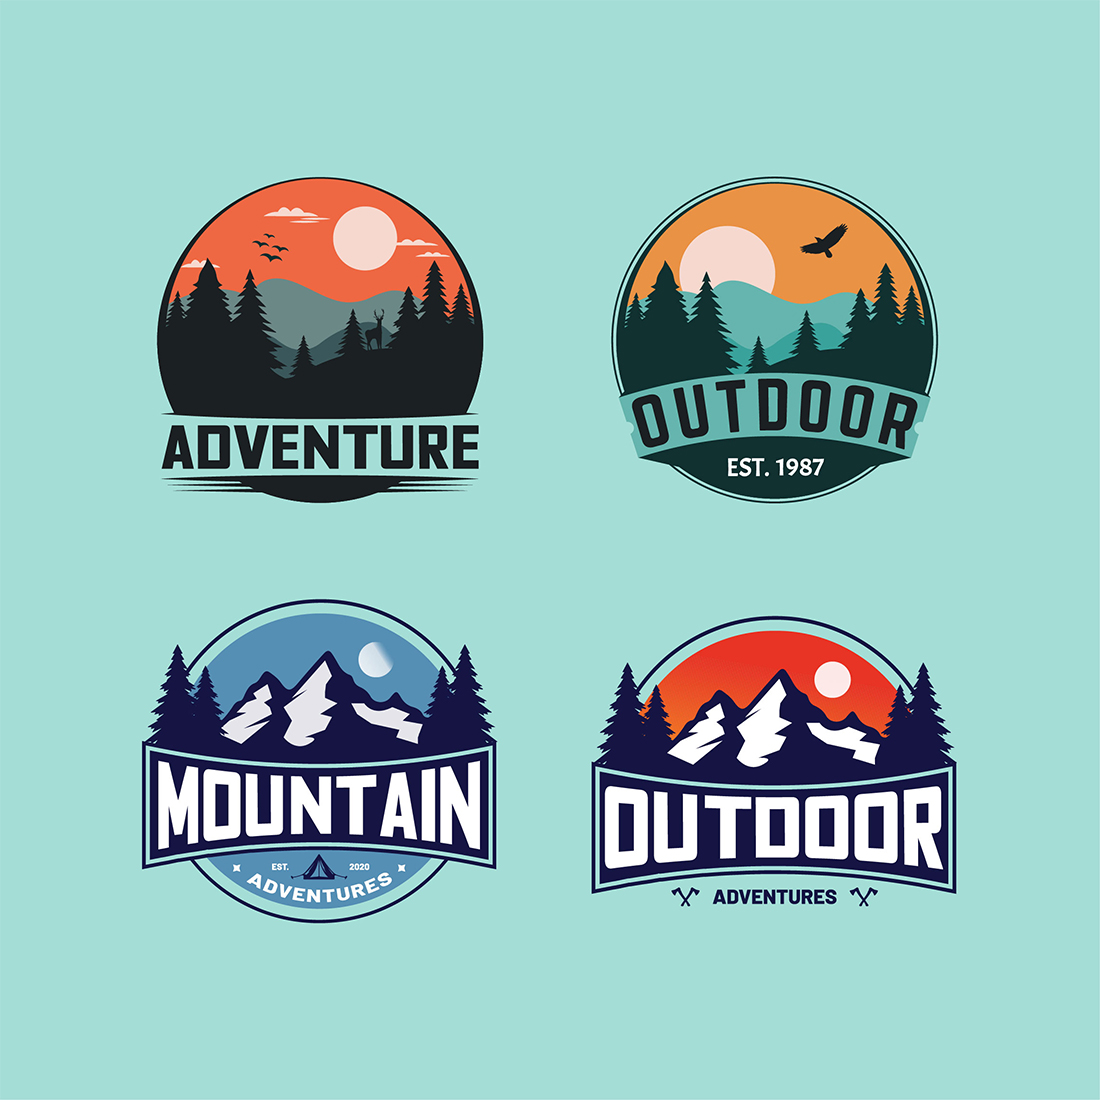 Adventure outdoor mountain logo design vector illustration preview image.